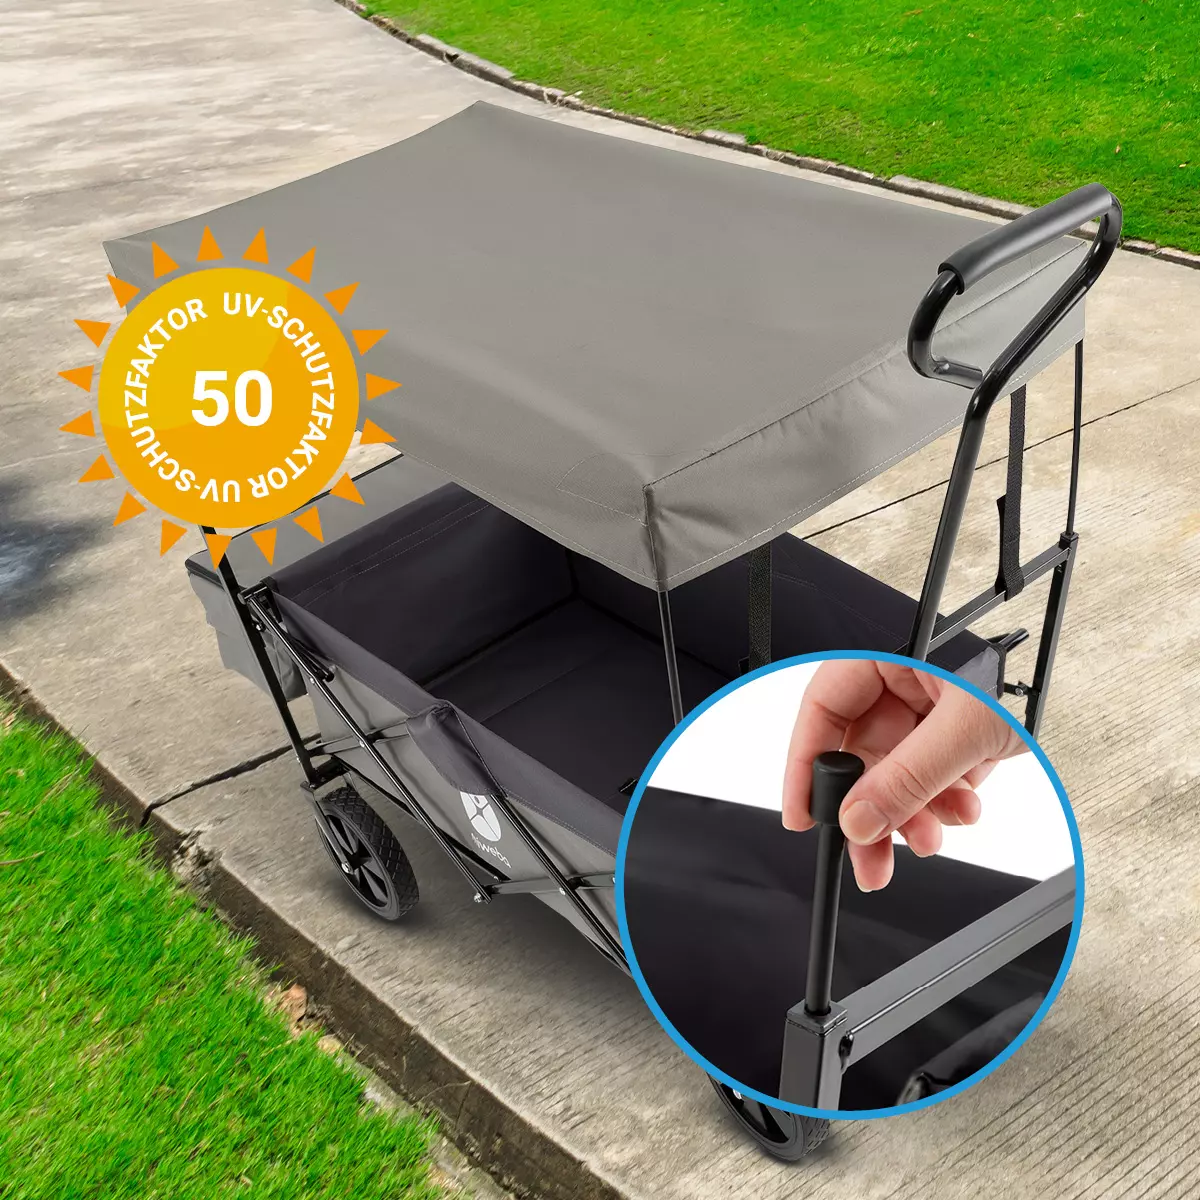 Wózek ręczny z daszkiem przeciwsłonecznym o współczynniku ochrony UV 50+ i wysuwanymi słupkami dachowymi